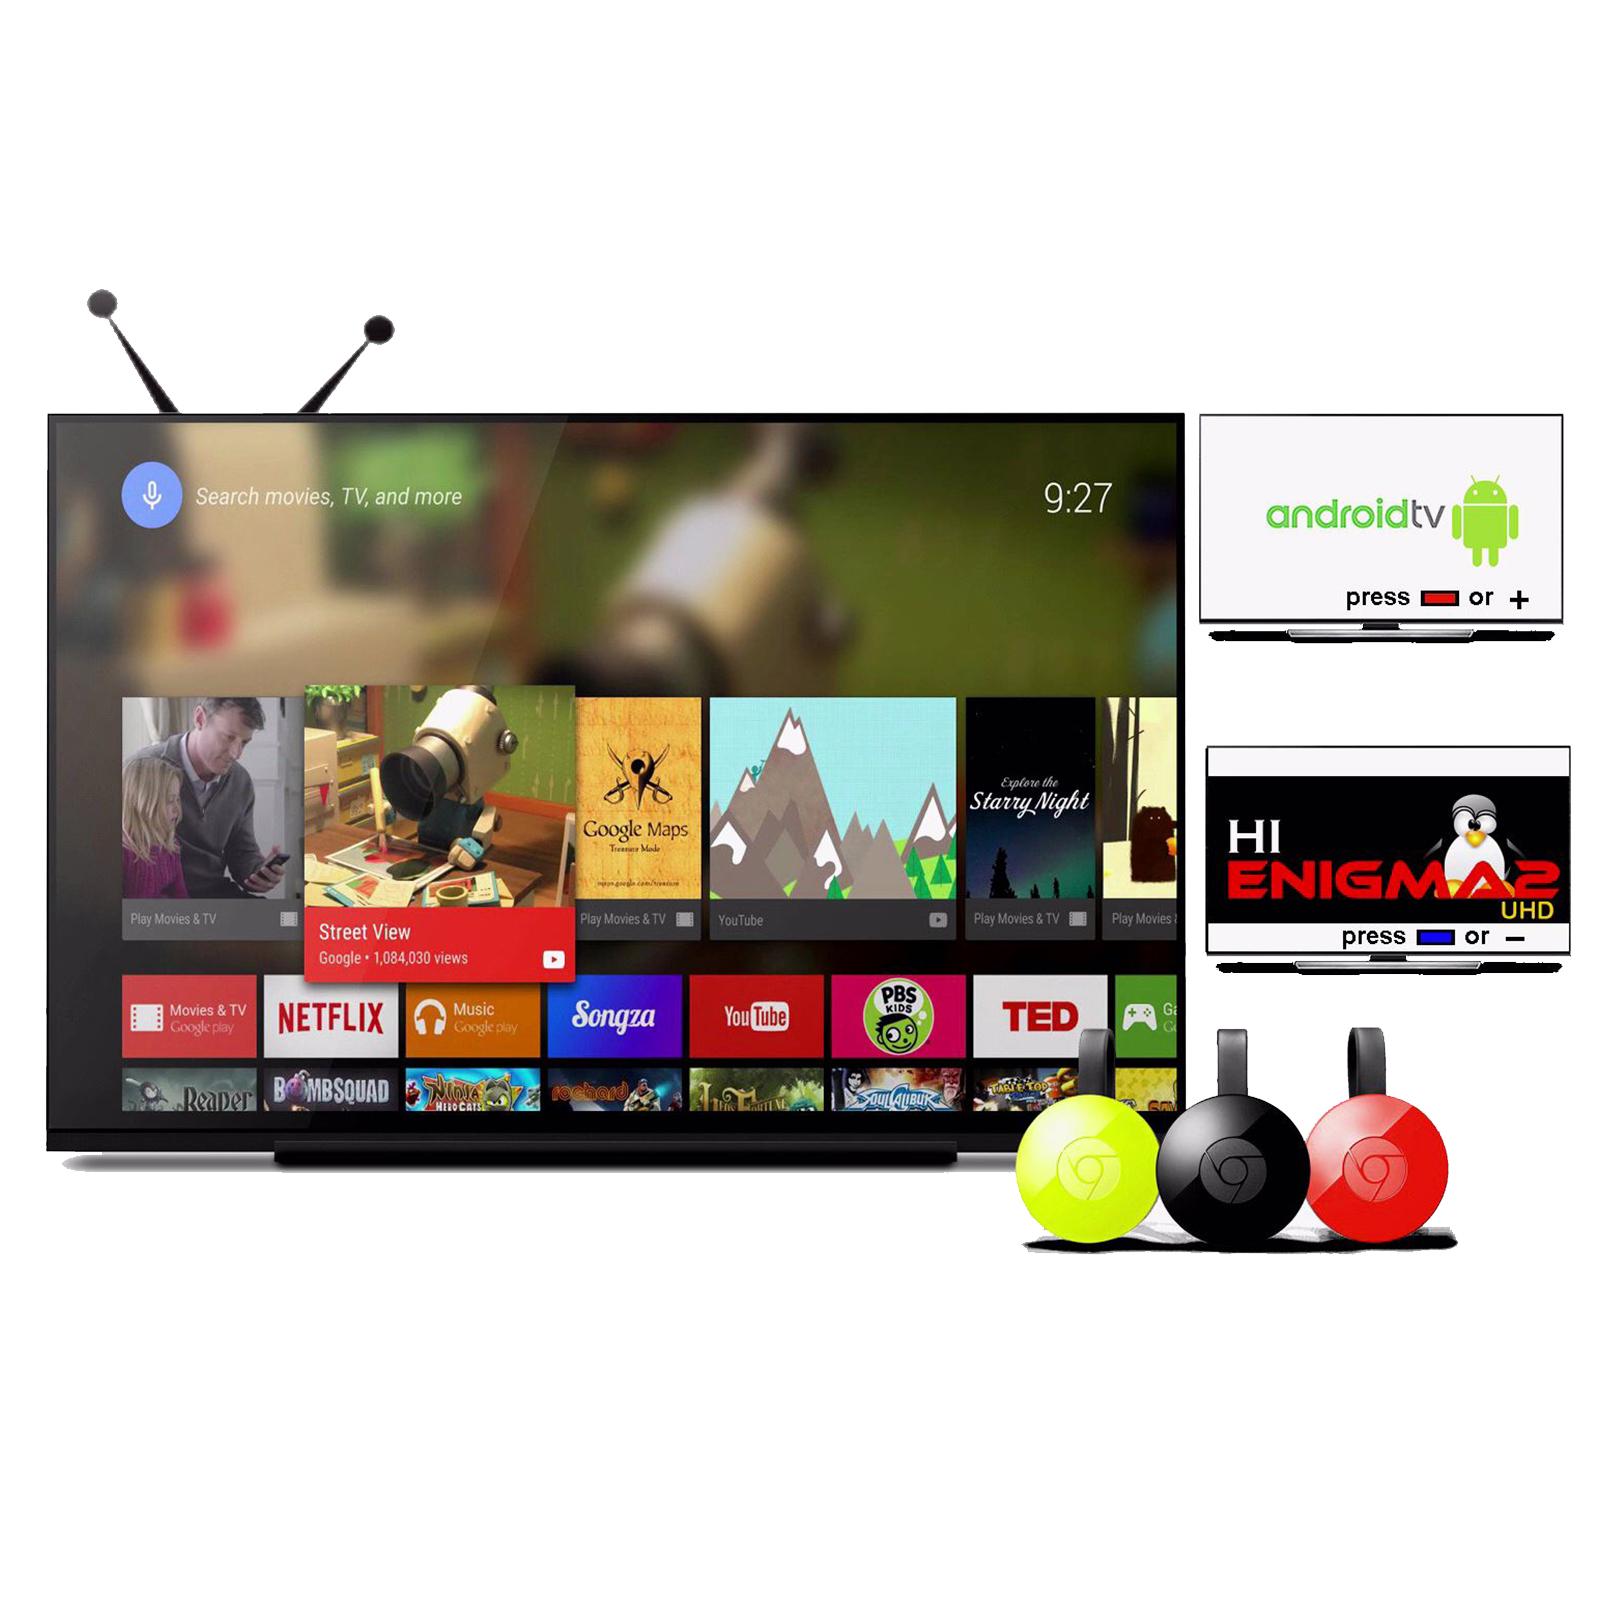 Dinobot TV U5 Mini 4K Android TV 2GB DDR4 16GB EMMC ENIGMA2 DVB-S2 ...